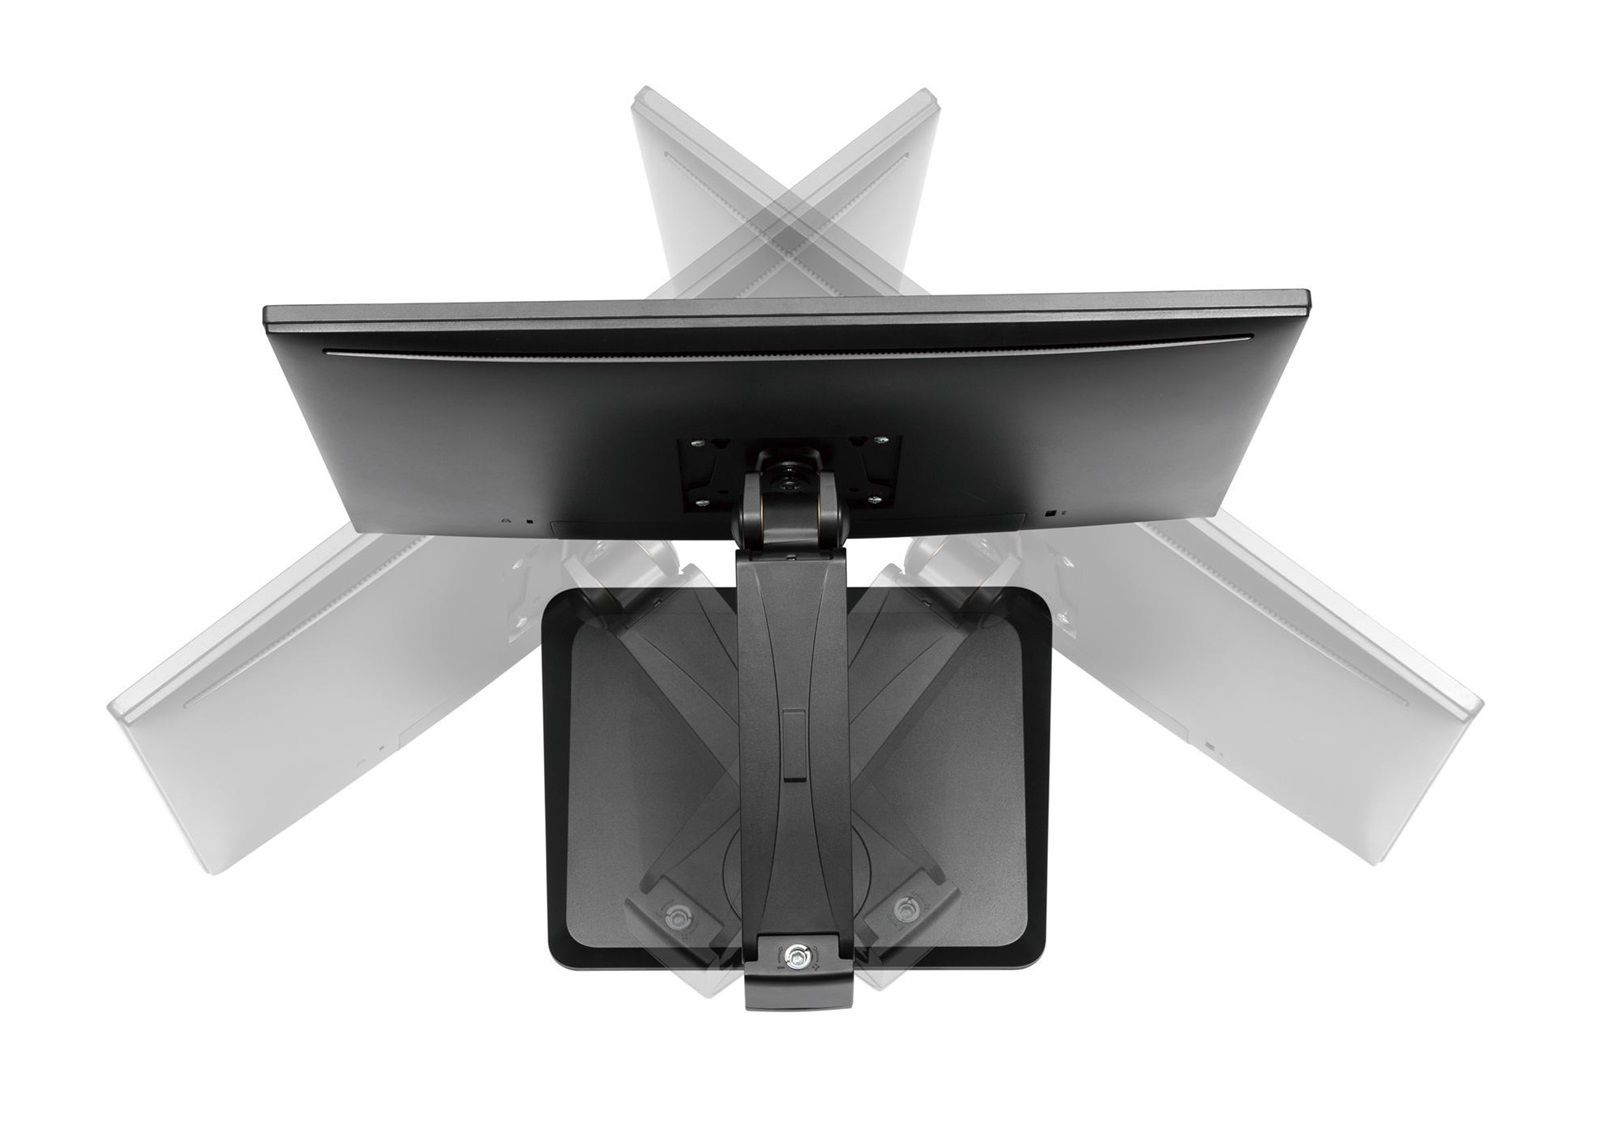 Podstavec - stojan na monitor, ergonomický, snadno polohovatelný Fiber Mounts Frios